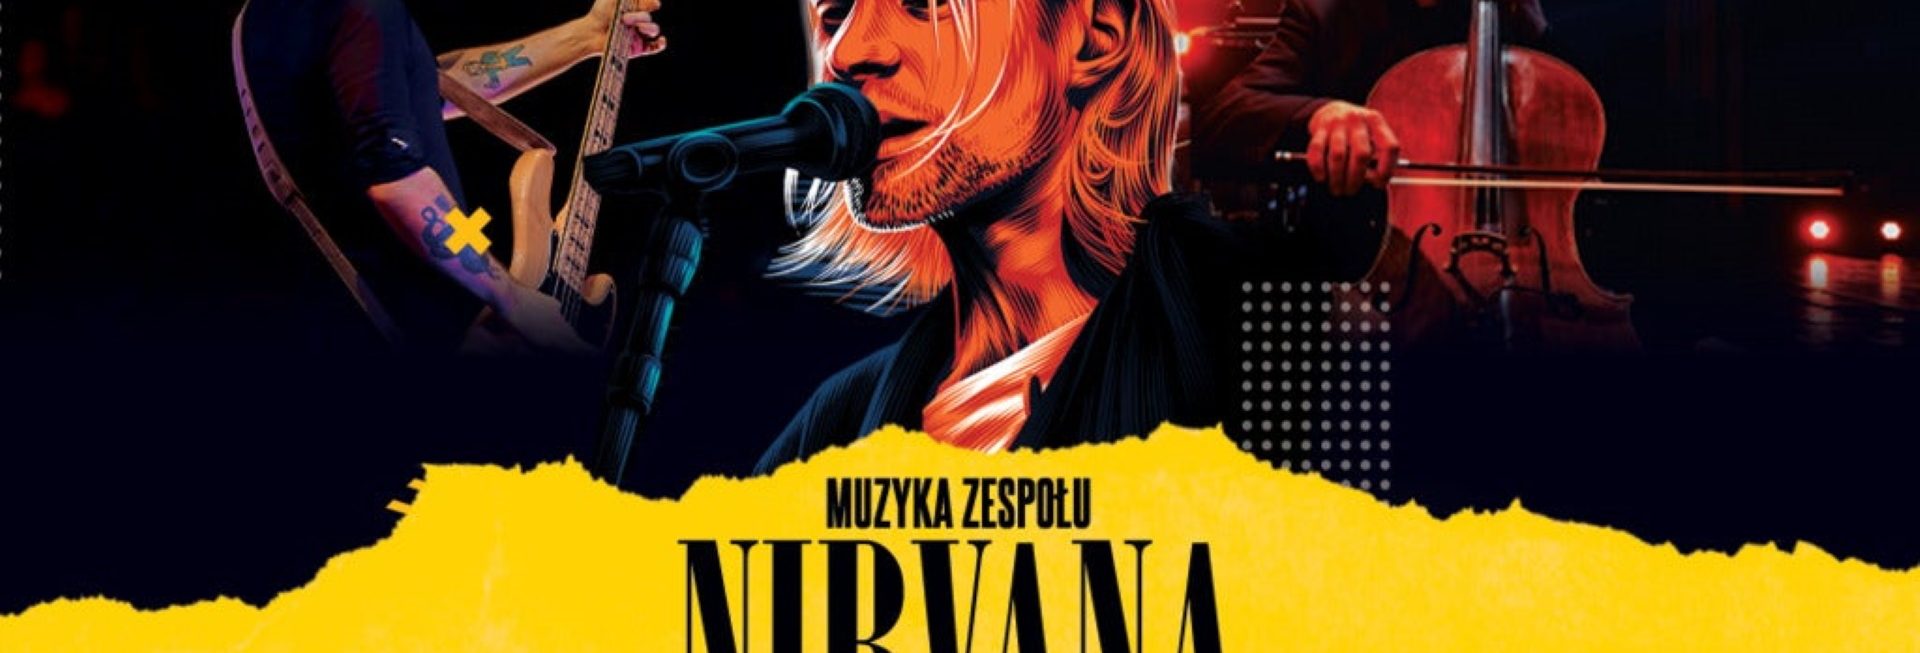 Plakat zapraszający do Olsztyna na koncert Muzyka Zespołu Nirvana Symfonicznie Filharmonia Olsztyn 2023.